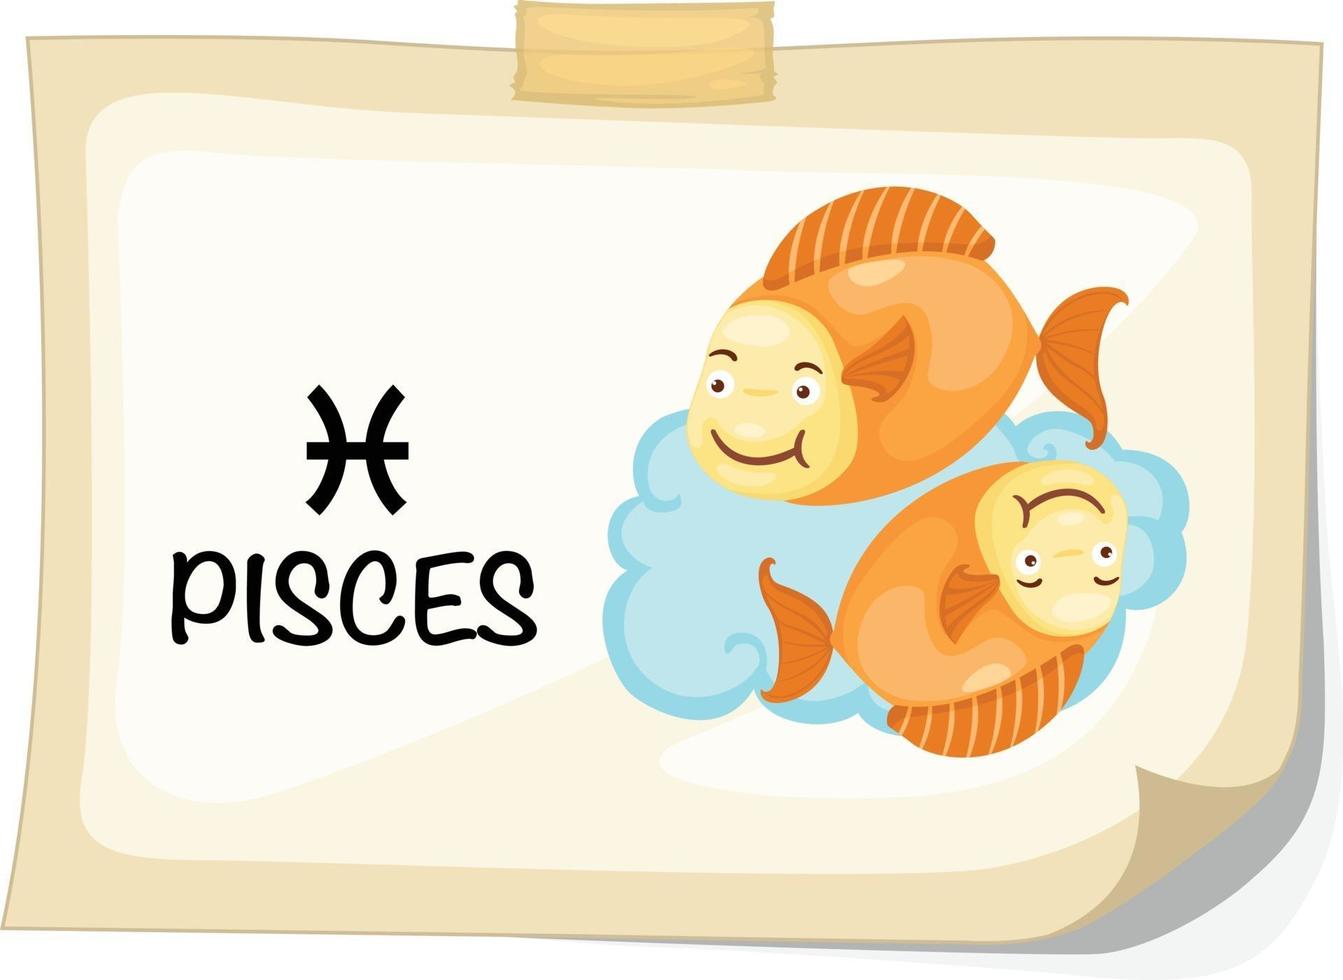 signos do zodíaco - ilustração do vetor de peixes